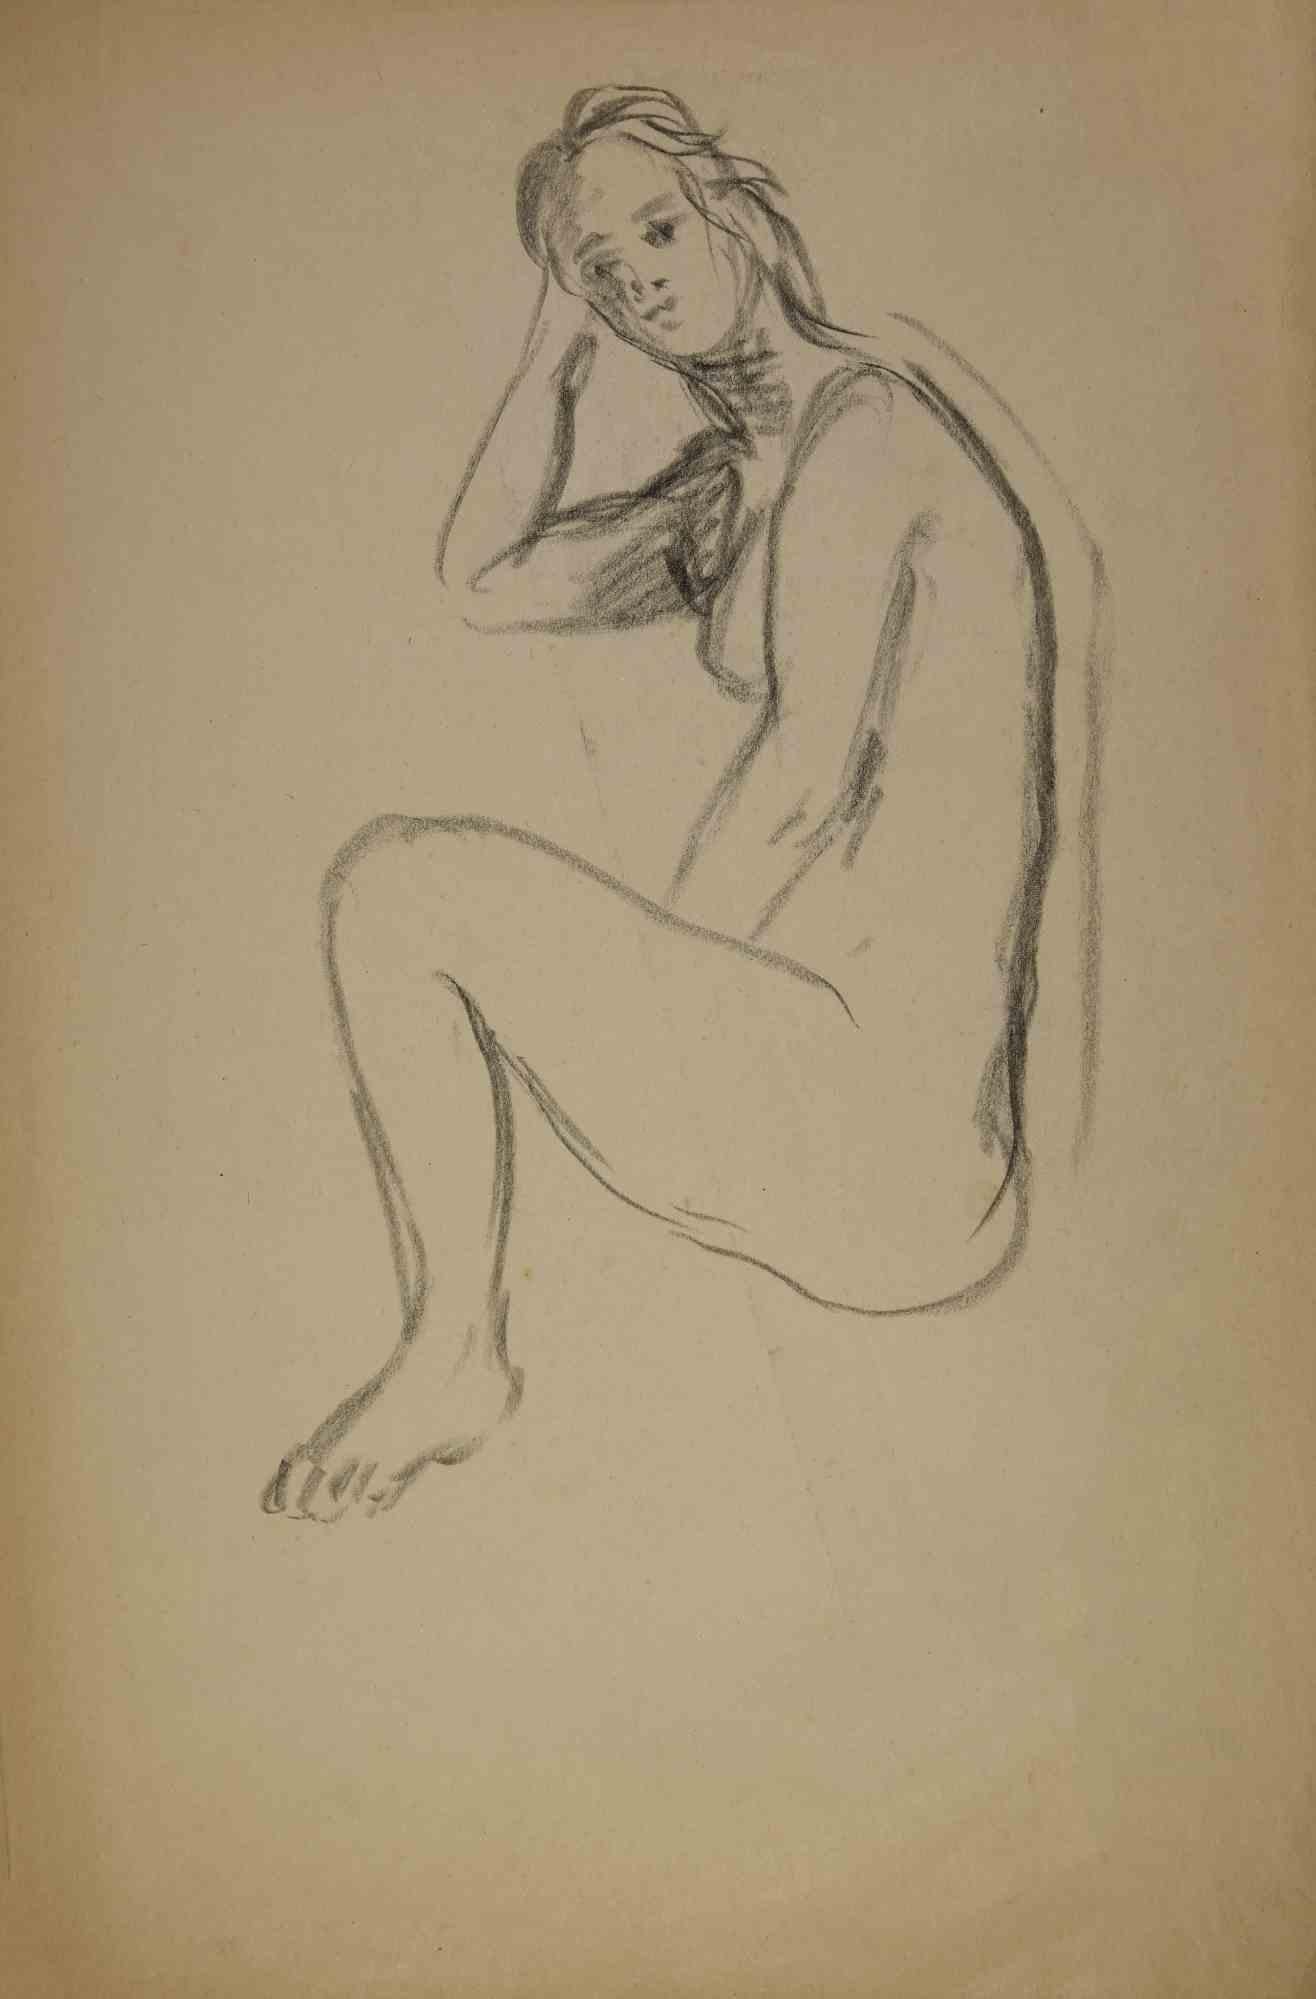 Nackte Frau ist ein Kunstwerk des französischen Künstlers André Meaux Saint-Marc (1885-1941) aus dem frühen 20. Jahrhundert.

Bleistift auf Papier. Handsigniert auf der Rückseite.

Der Künstler möchte eine ausgewogene Komposition durch Präzision und